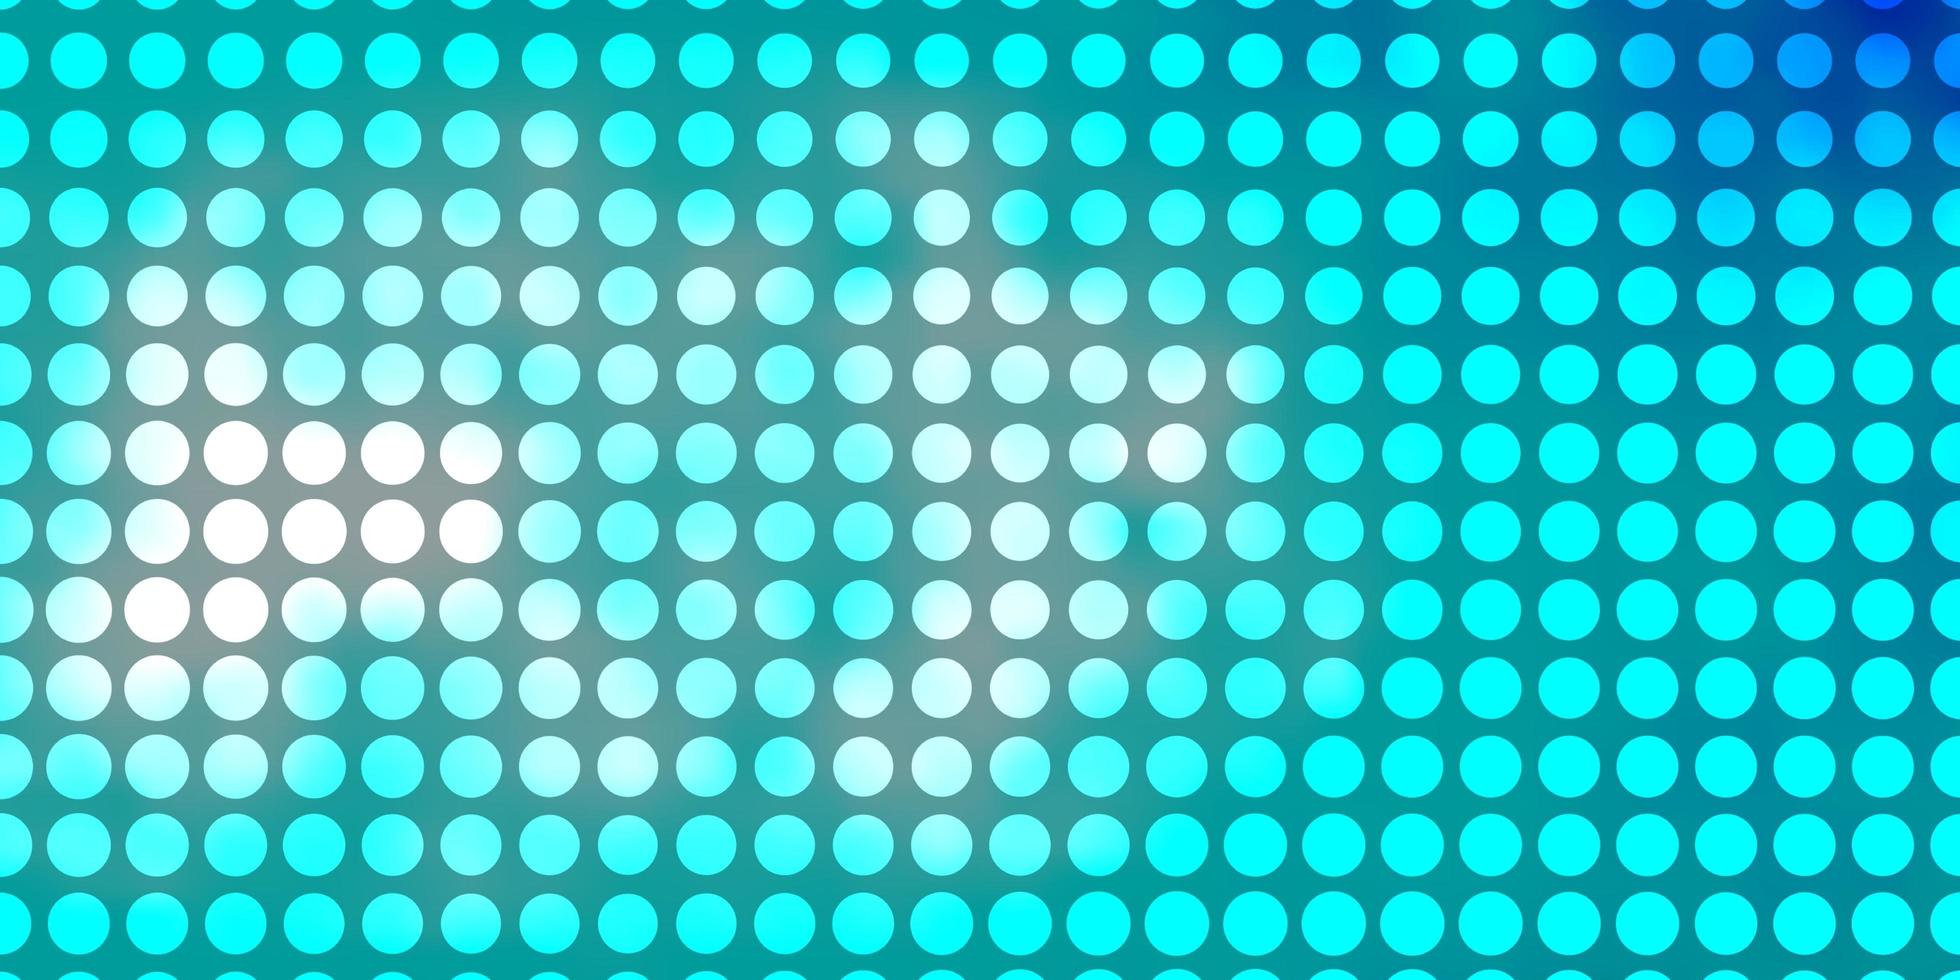 toile de fond de vecteur bleu clair avec des cercles. illustration abstraite moderne avec des formes de cercle coloré. conception d'affiches, de bannières.